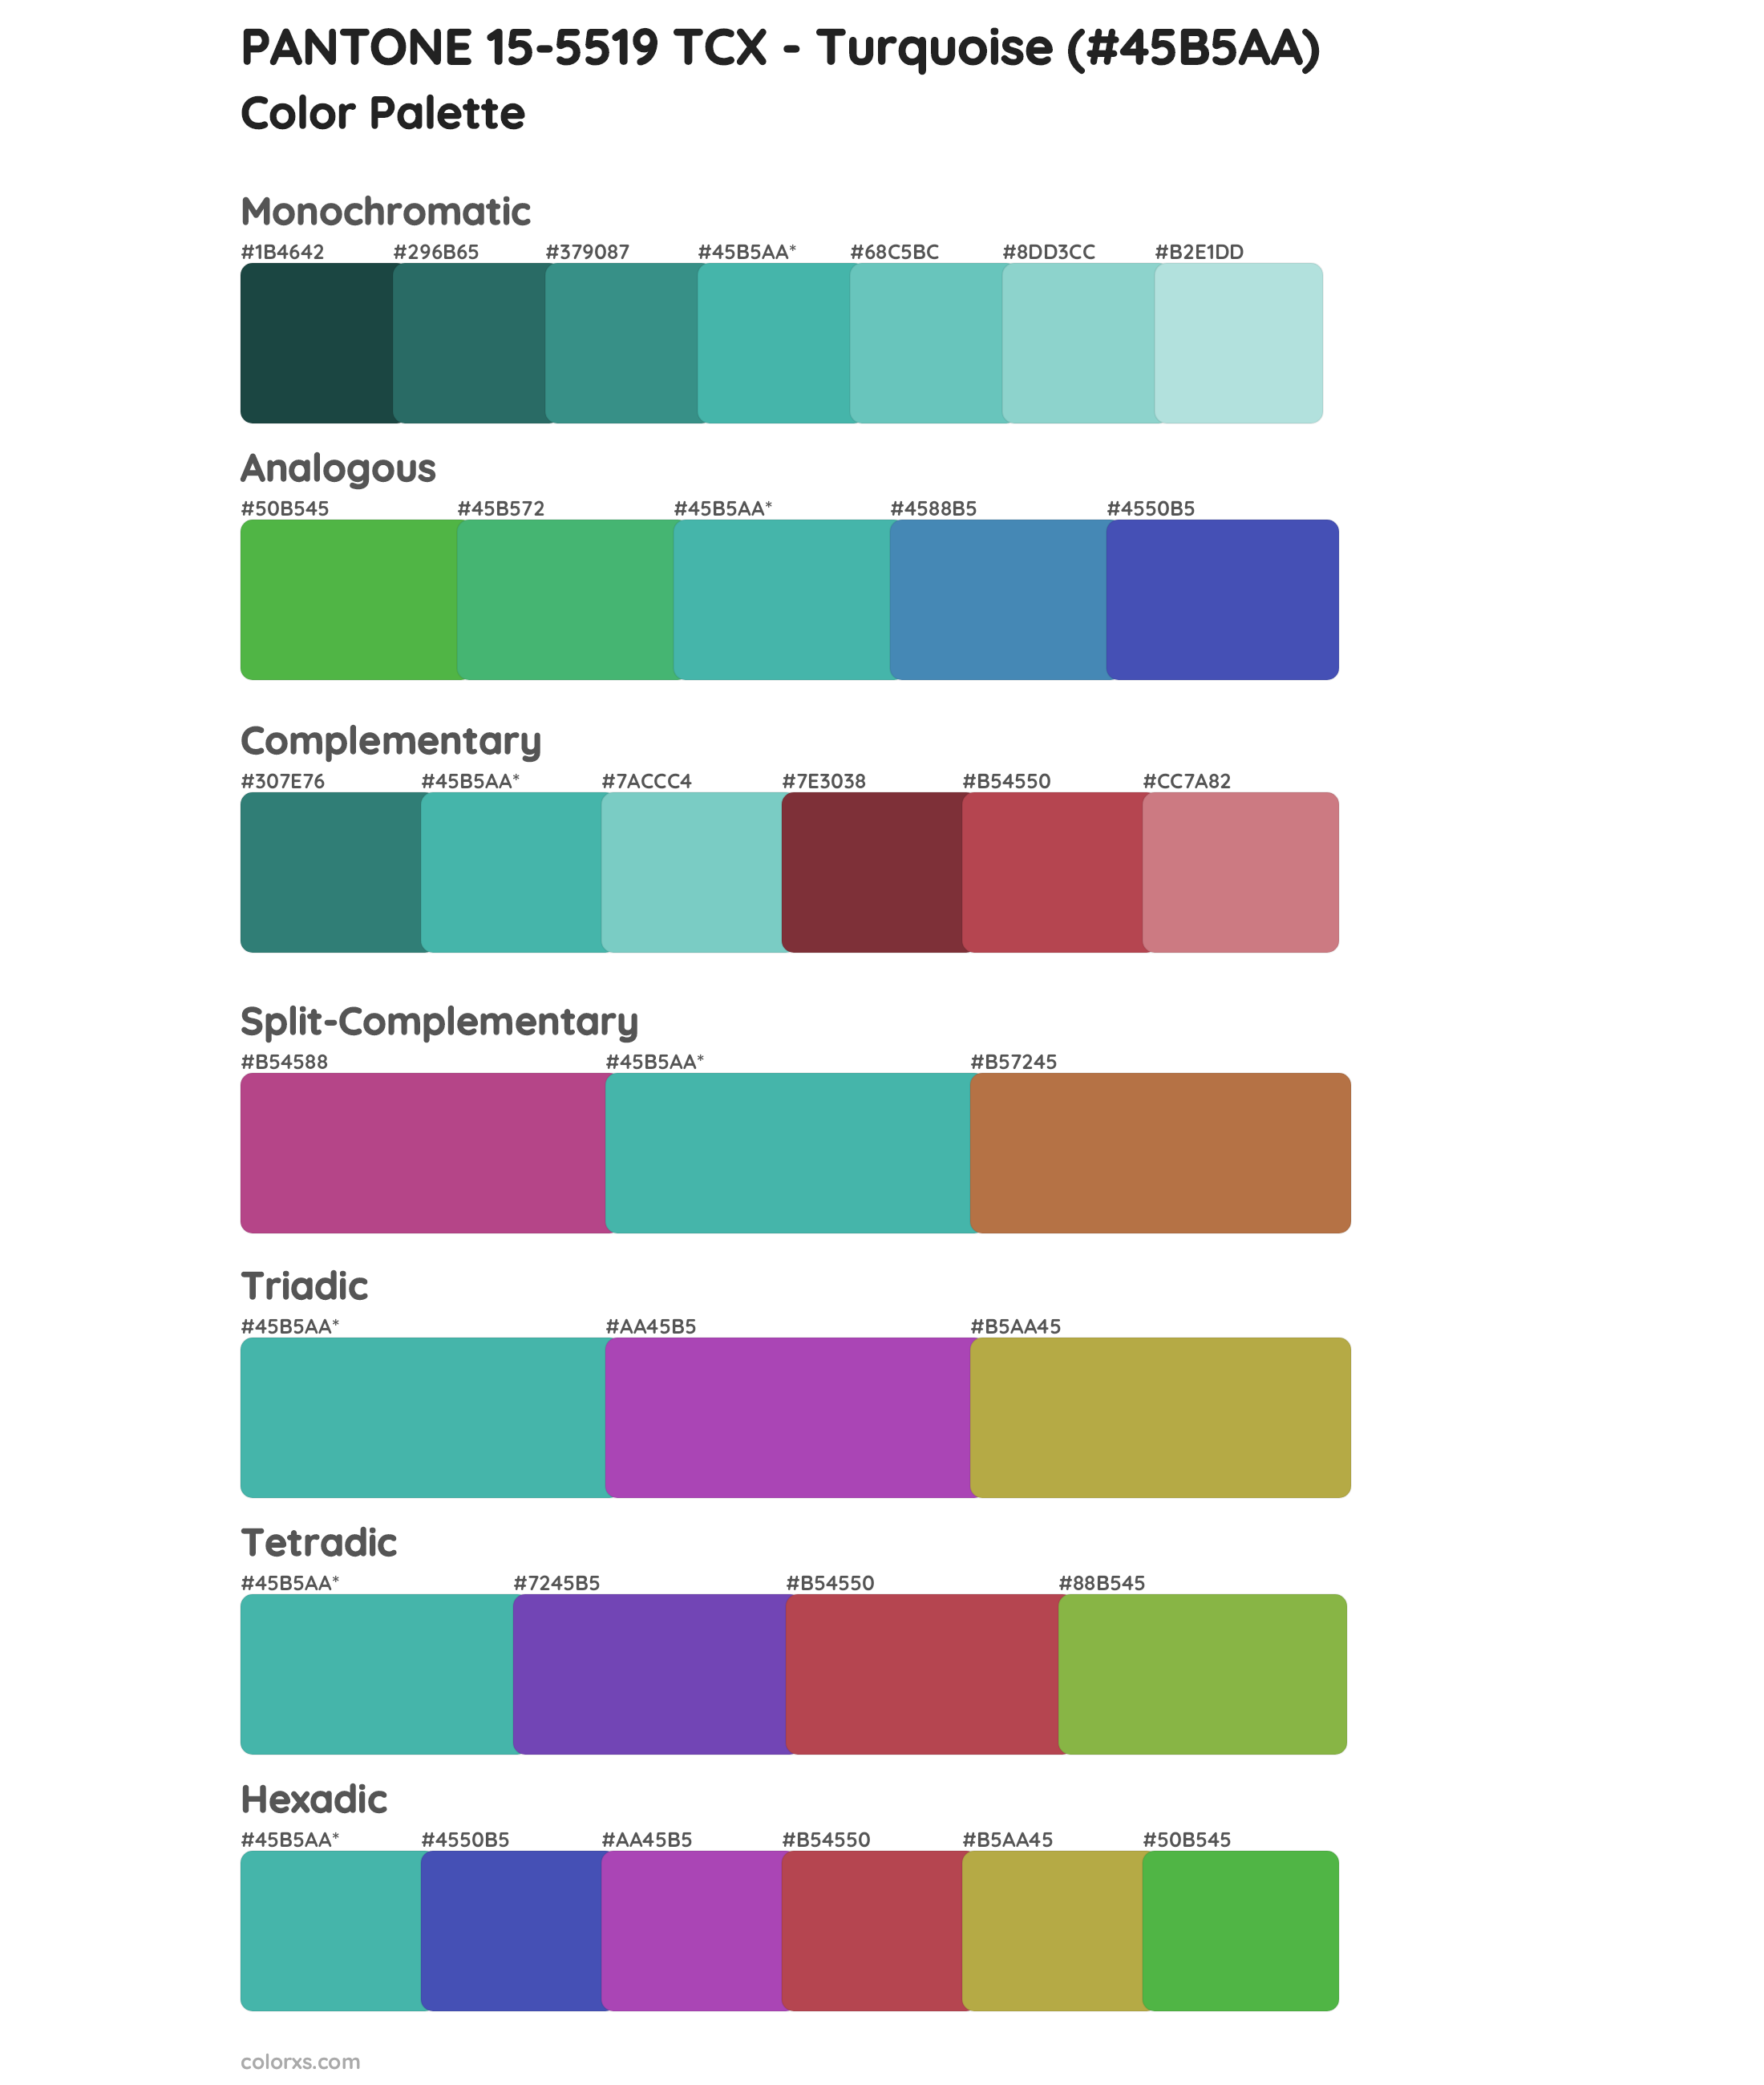 PANTONE 15-5519 TCX - Turquoise Color Scheme Palettes